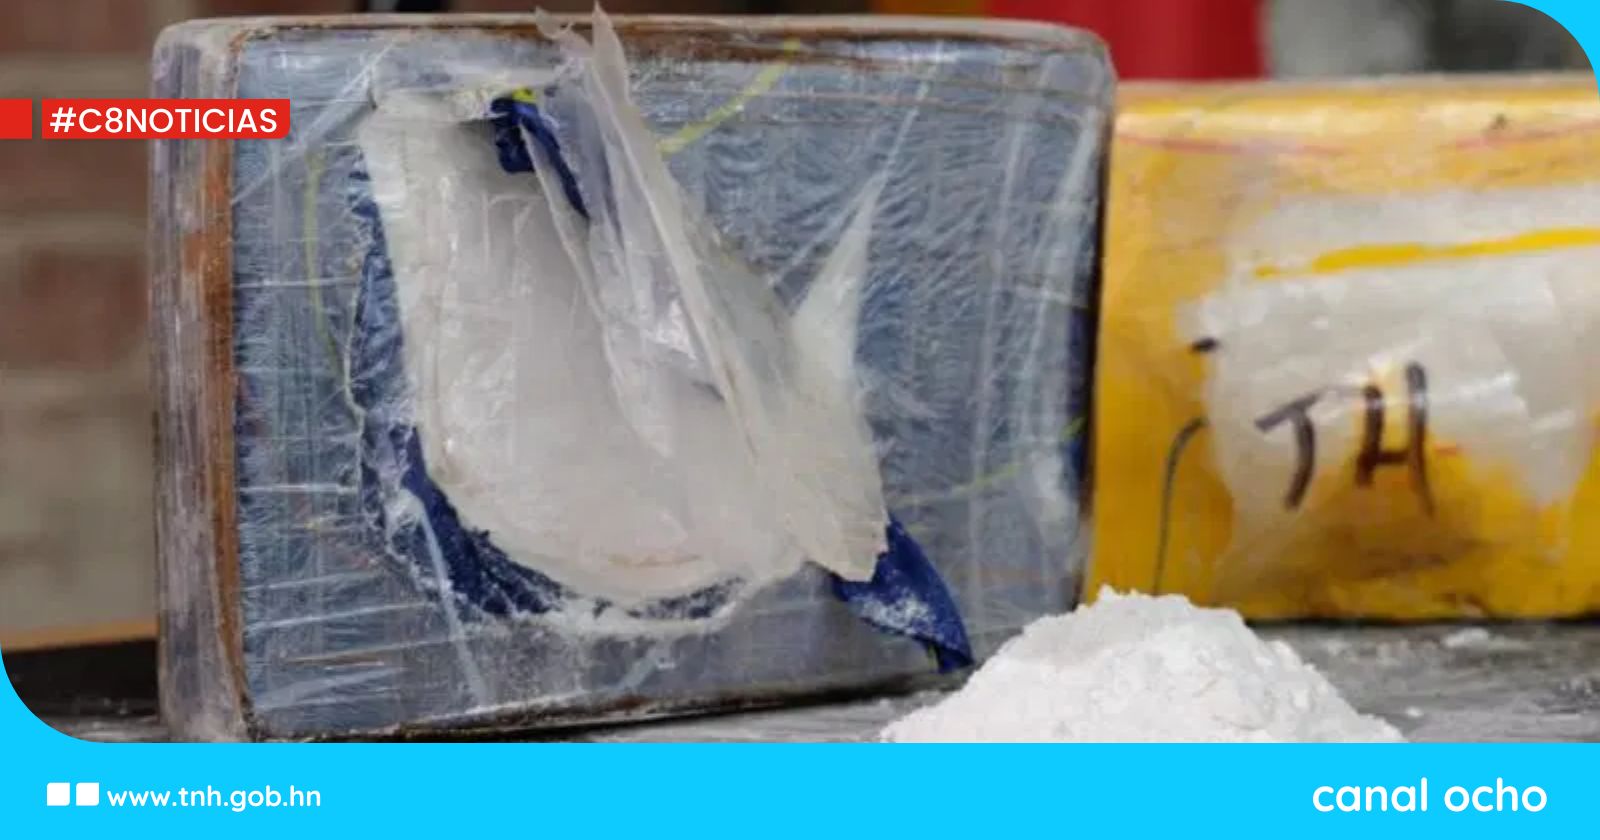 FF. AA. investigan sustracción de 144 kilos de cocaína de bodegas